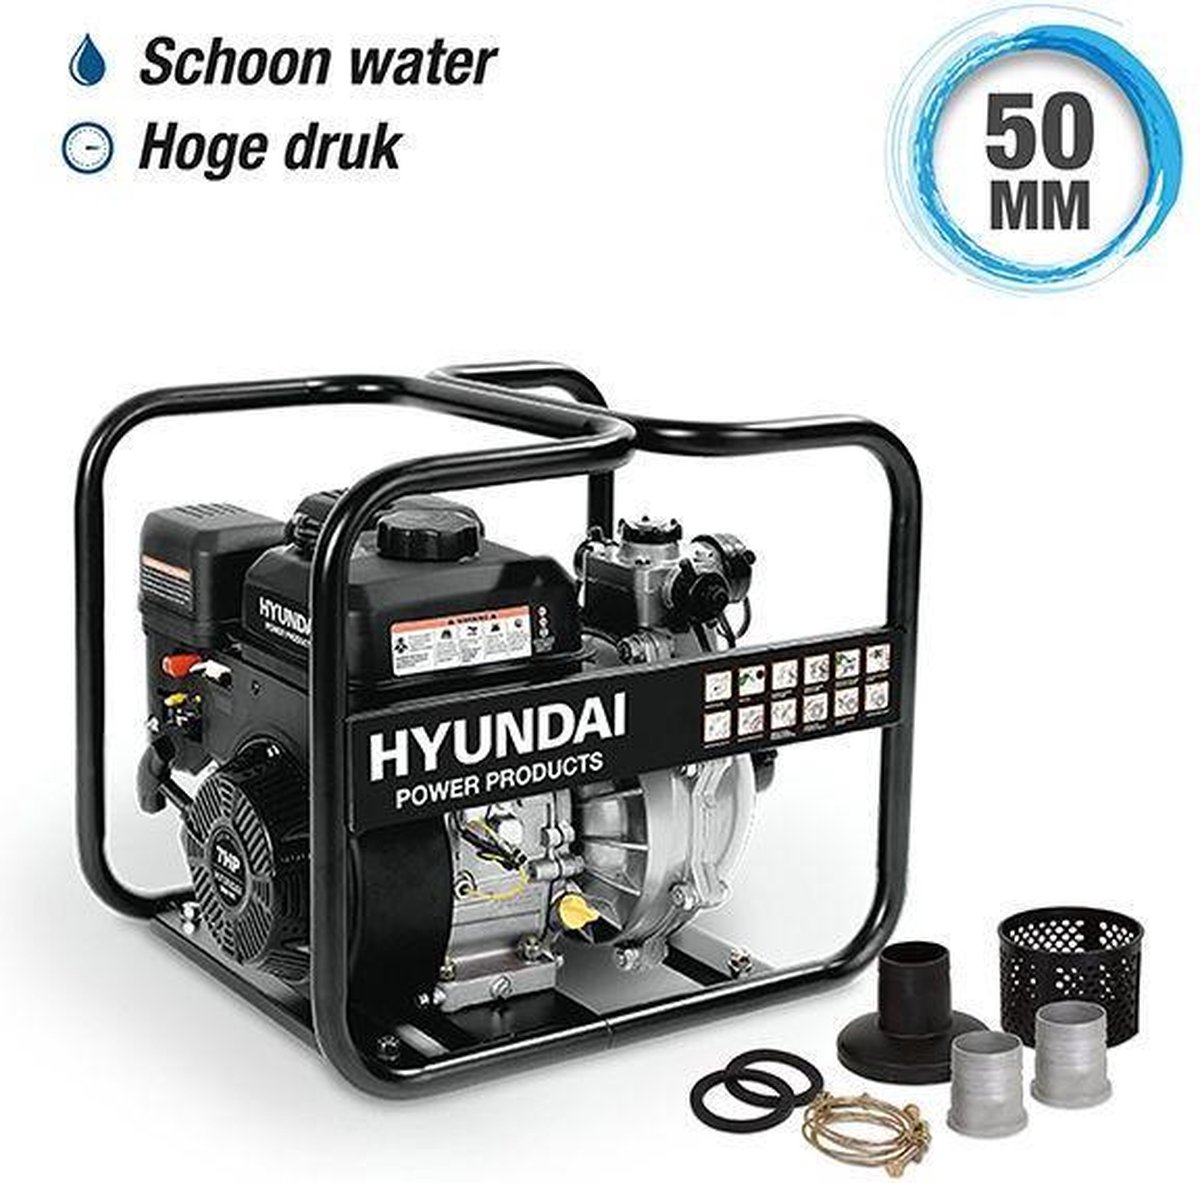 Hyundai Hogedruk Waterpomp 208cc - 57645 - Grijs